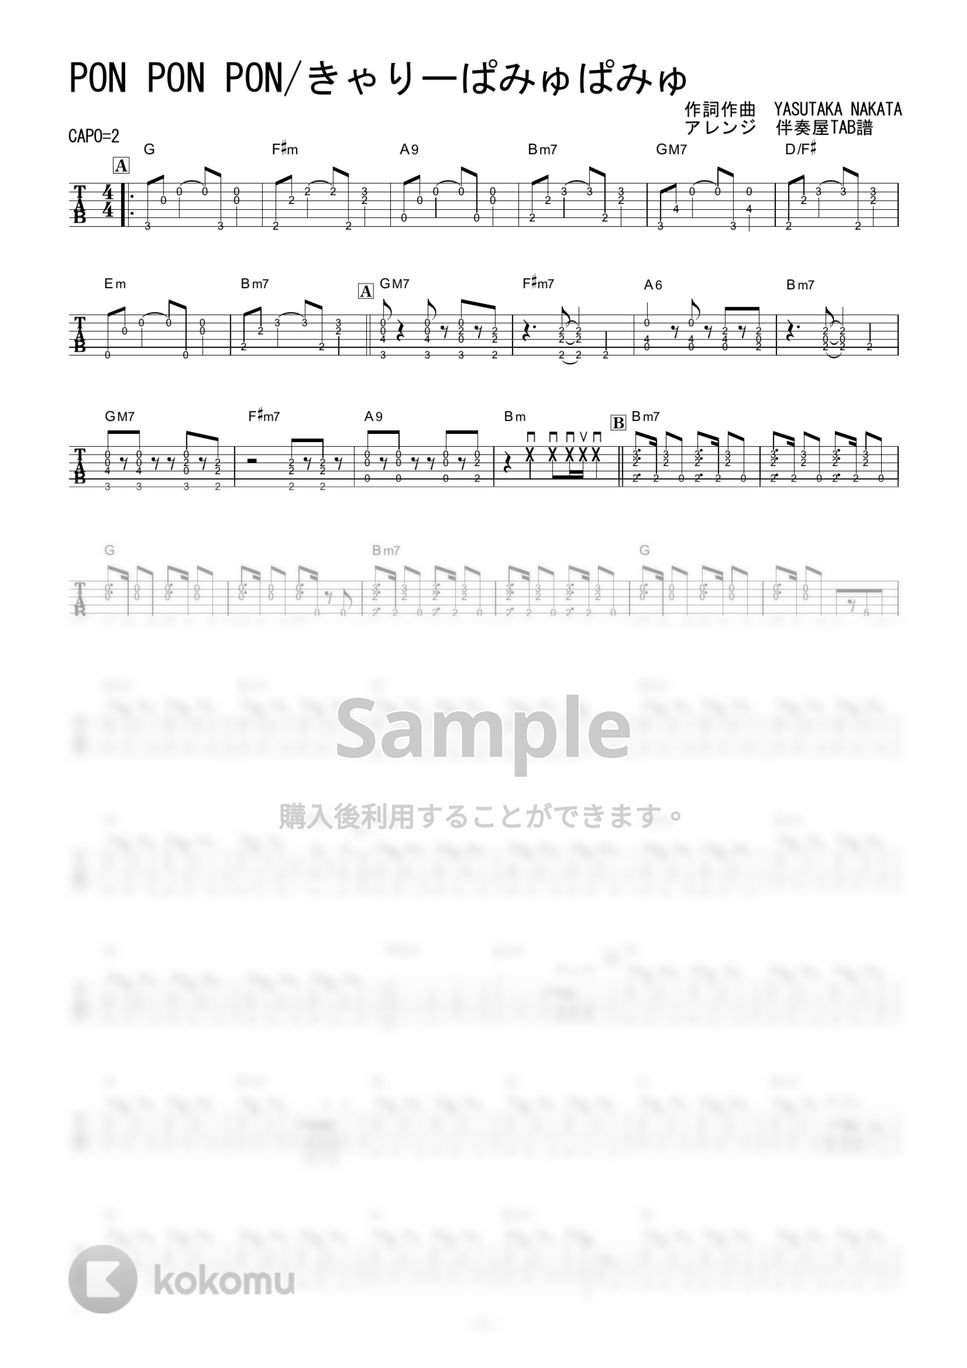 きゃりーぱみゅぱみゅ - PON PON PON (ギター伴奏/イントロ・間奏ソロギター) by 伴奏屋TAB譜